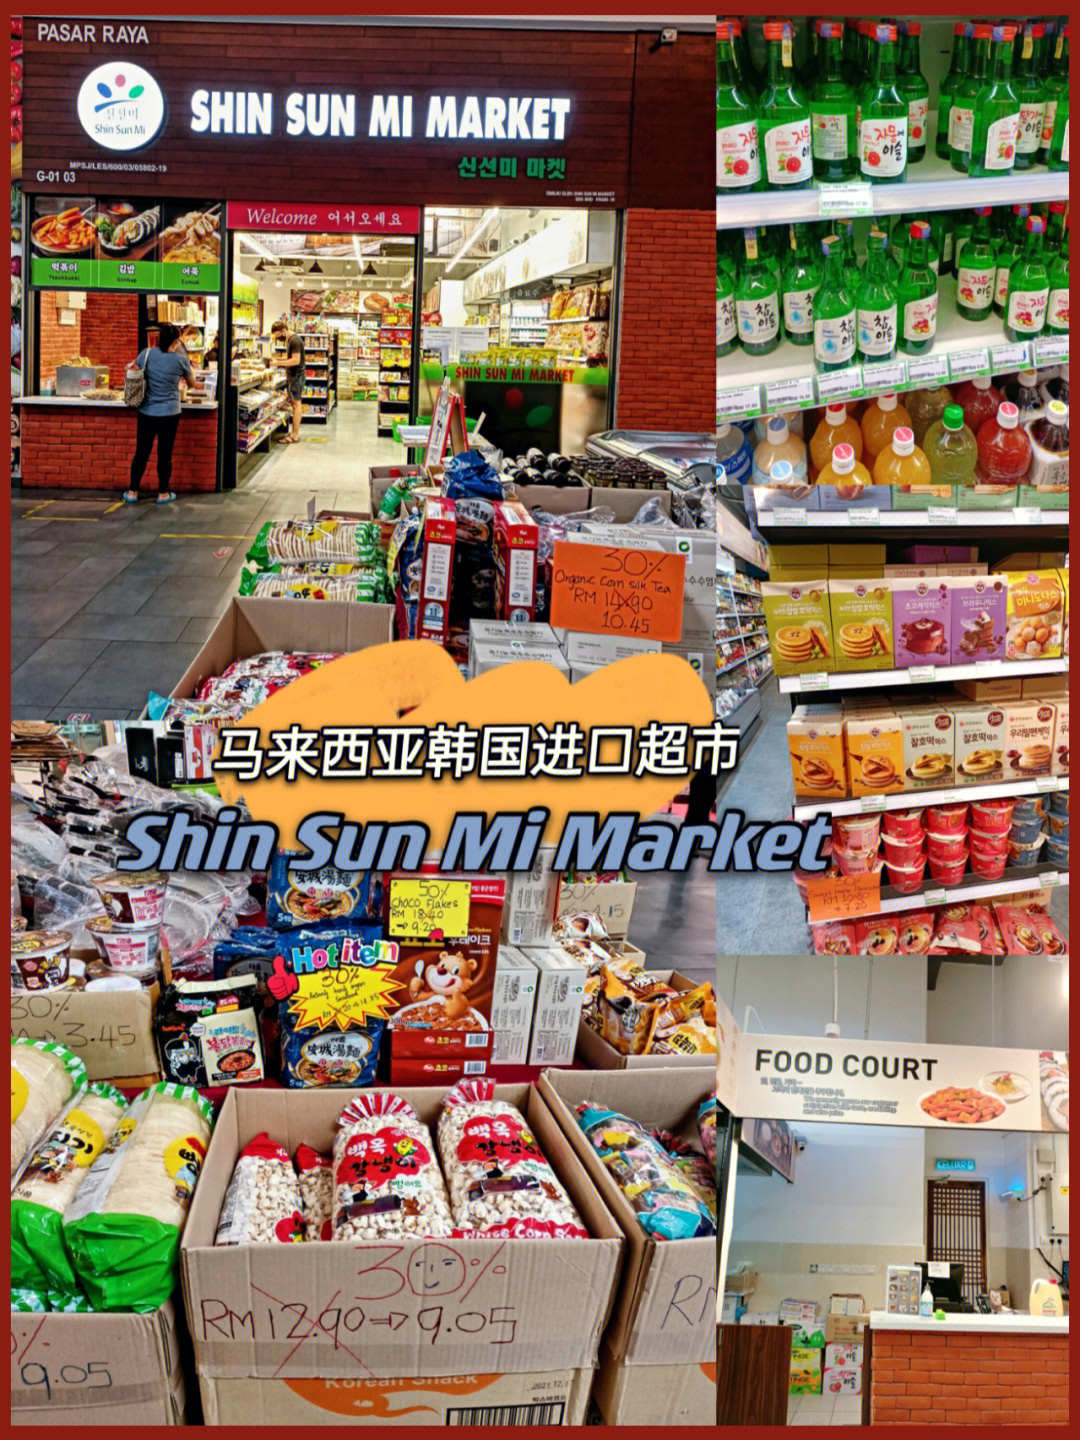 马来西亚韩国进口超市shinsunmimarket